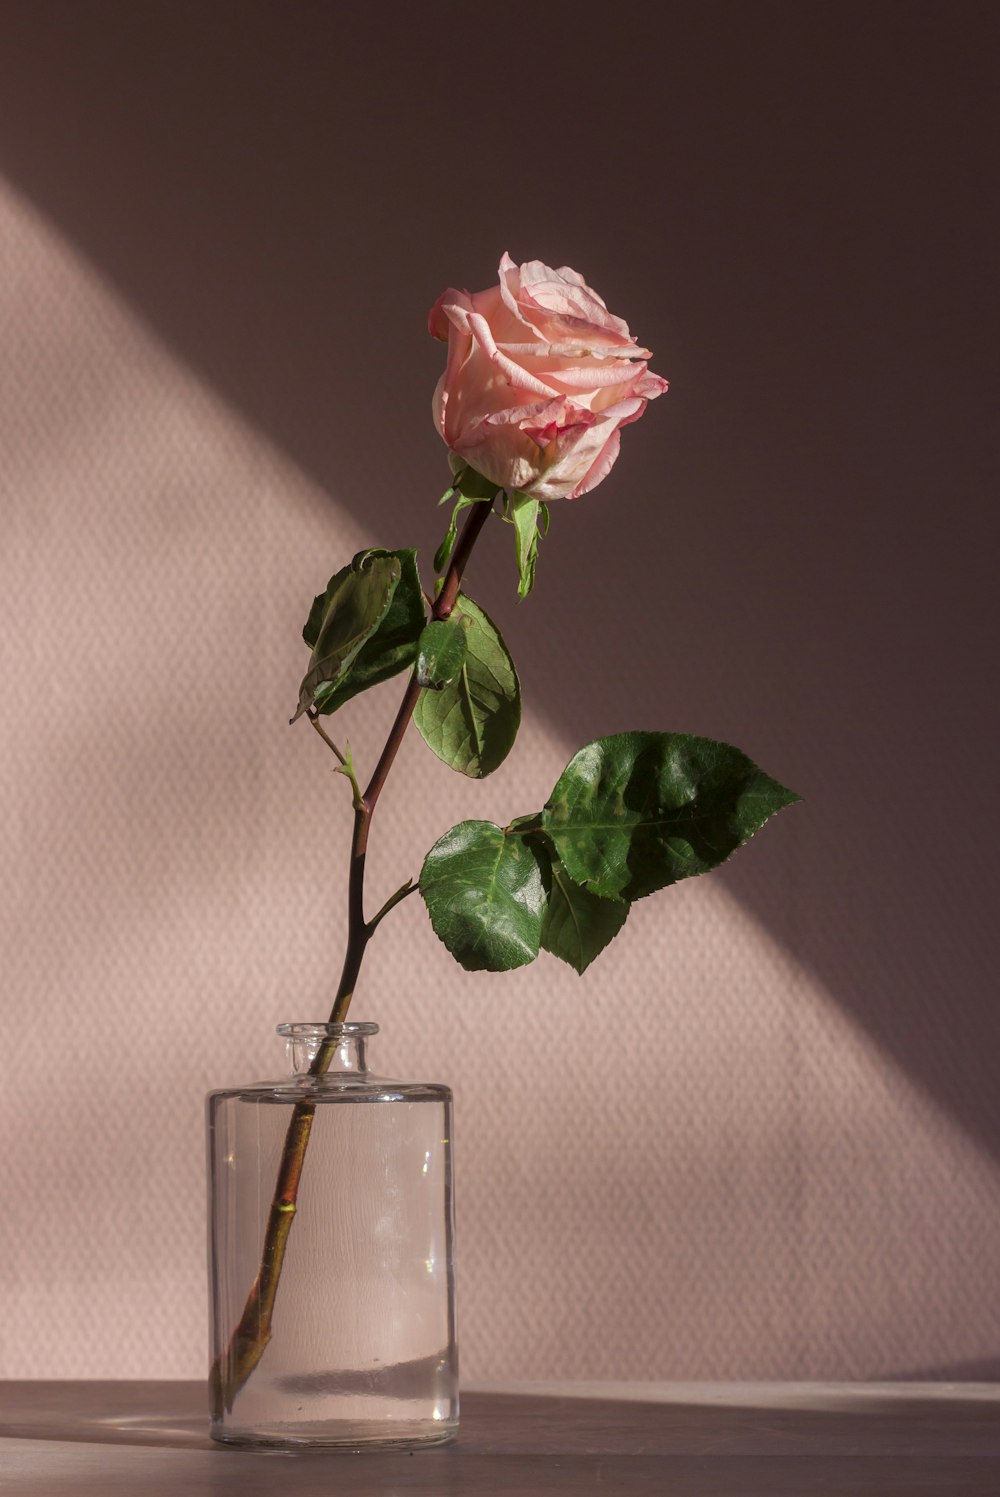 Light Pink Rose Pictures | Download Free Images on Unsplash